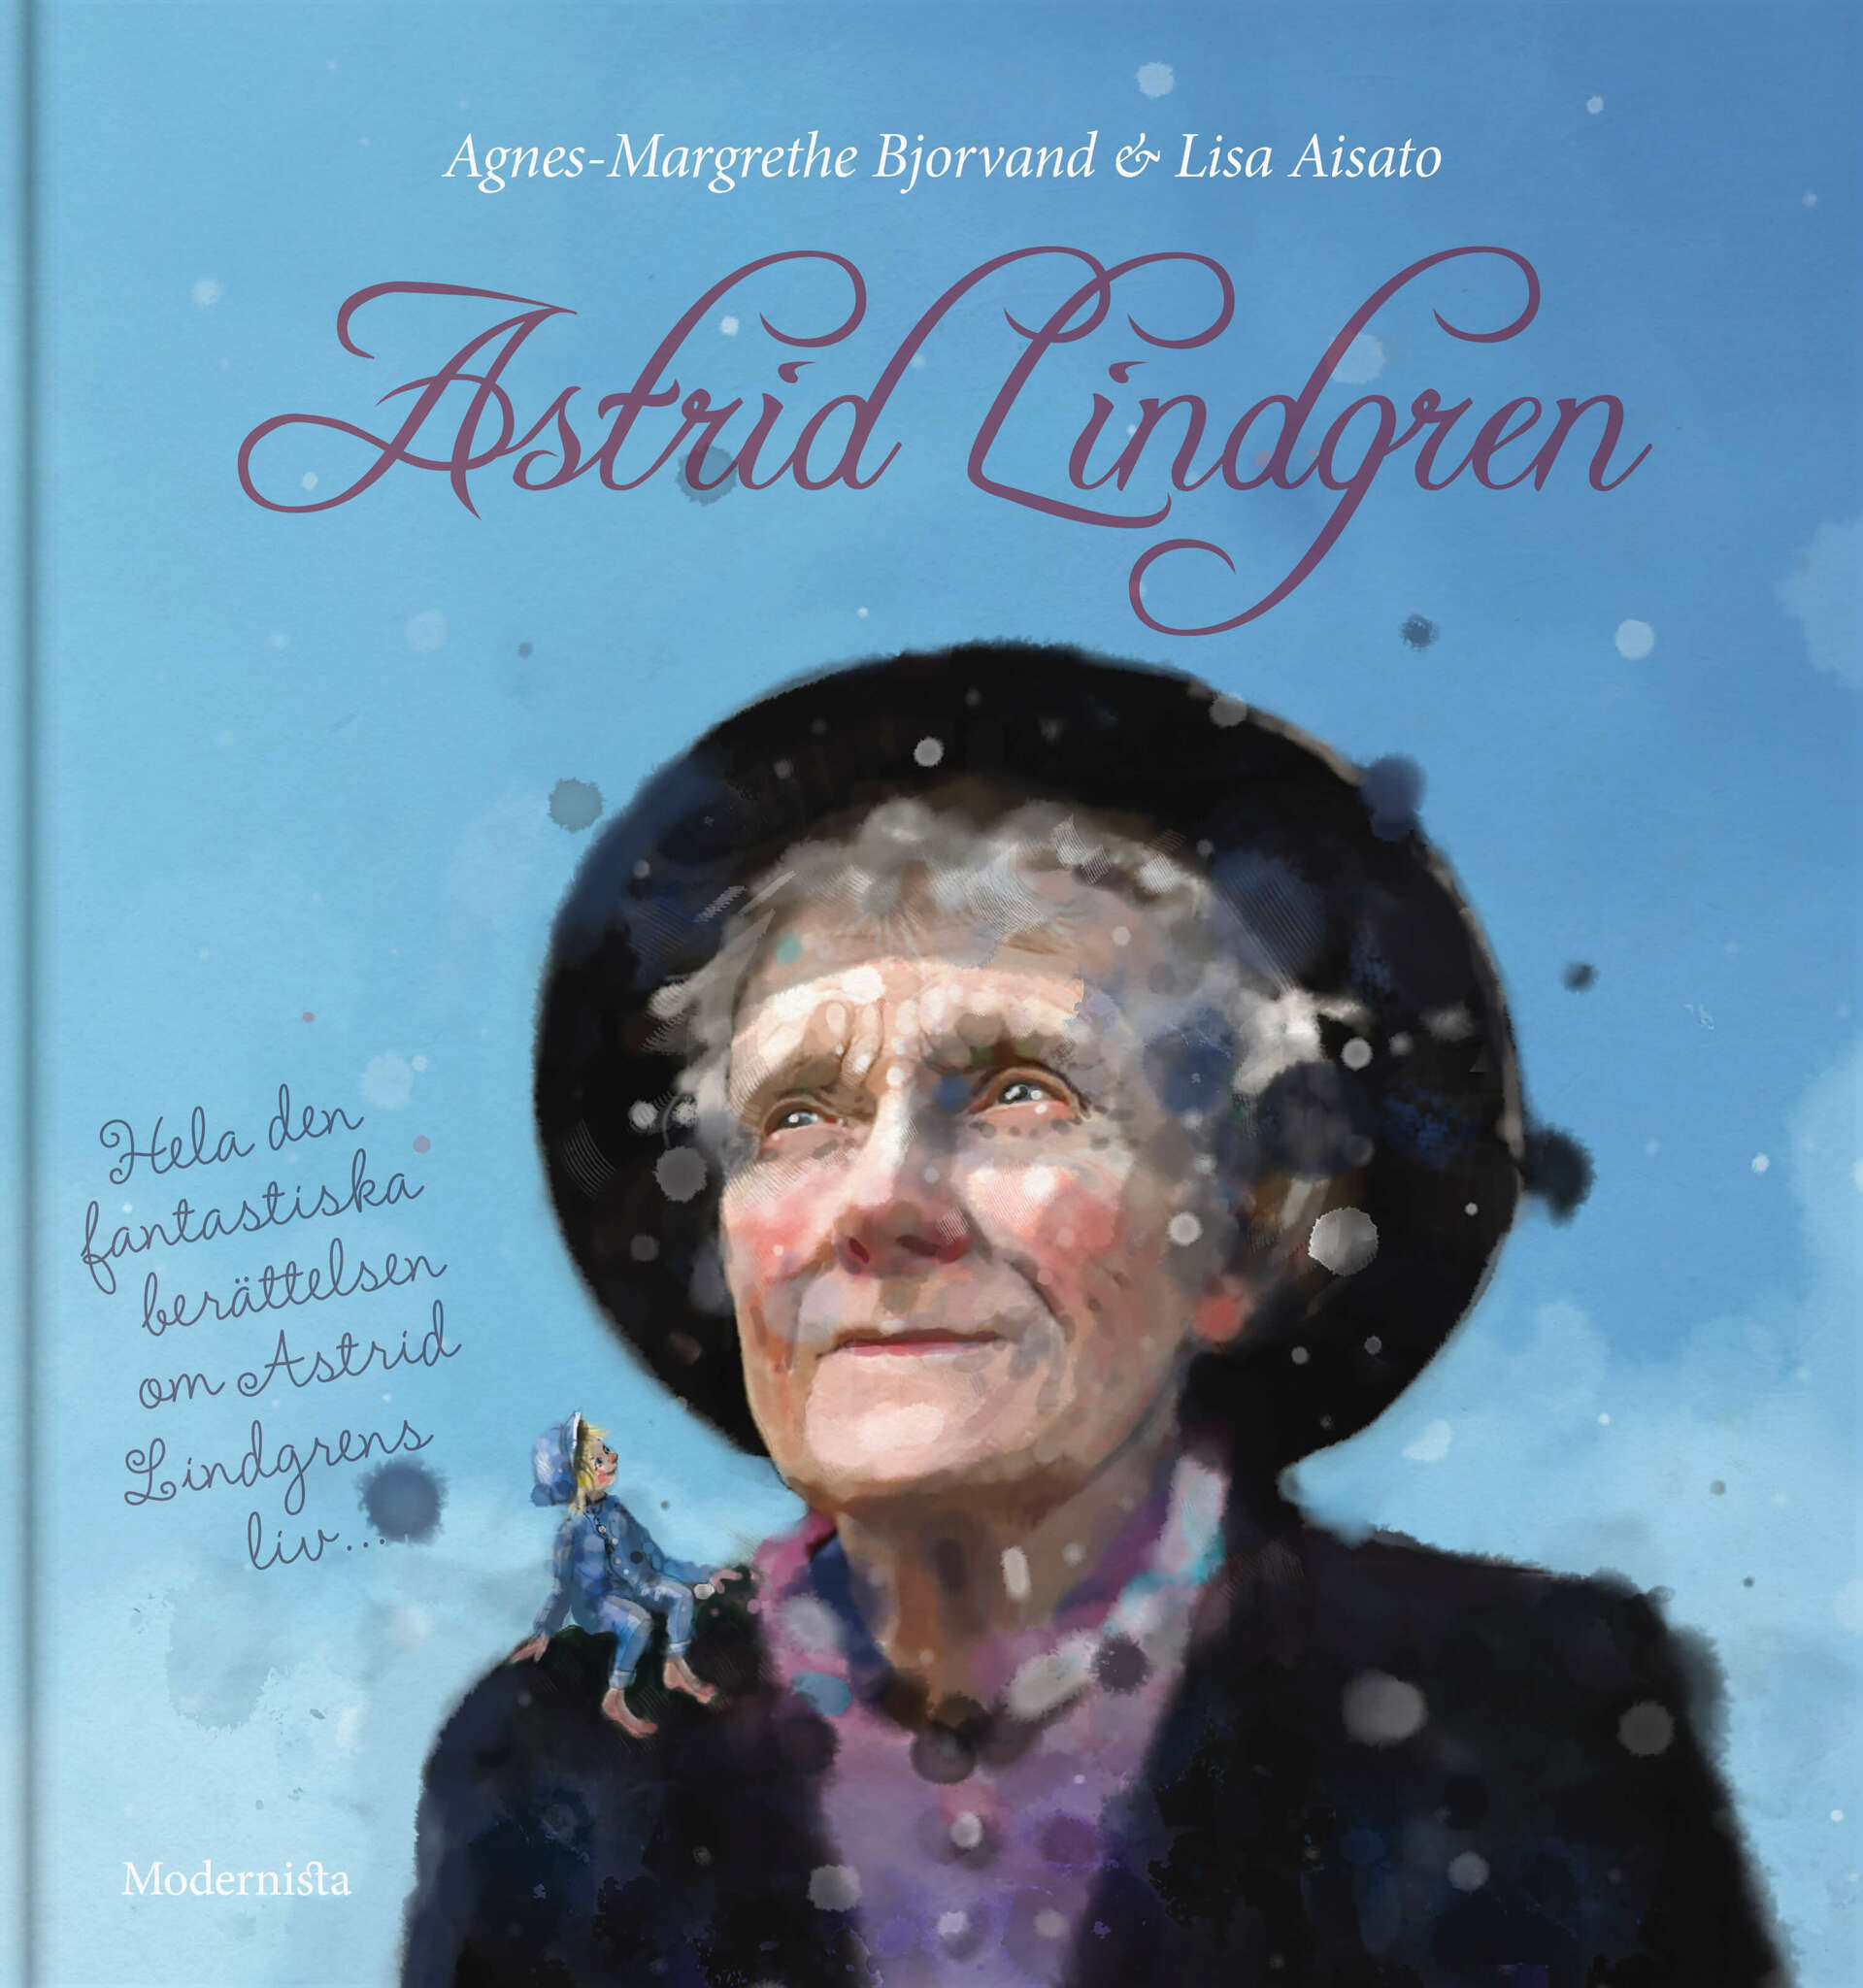 Astrid Lindgren - Hela den fantastiska berättelsen om Astrid Lindgrens liv...